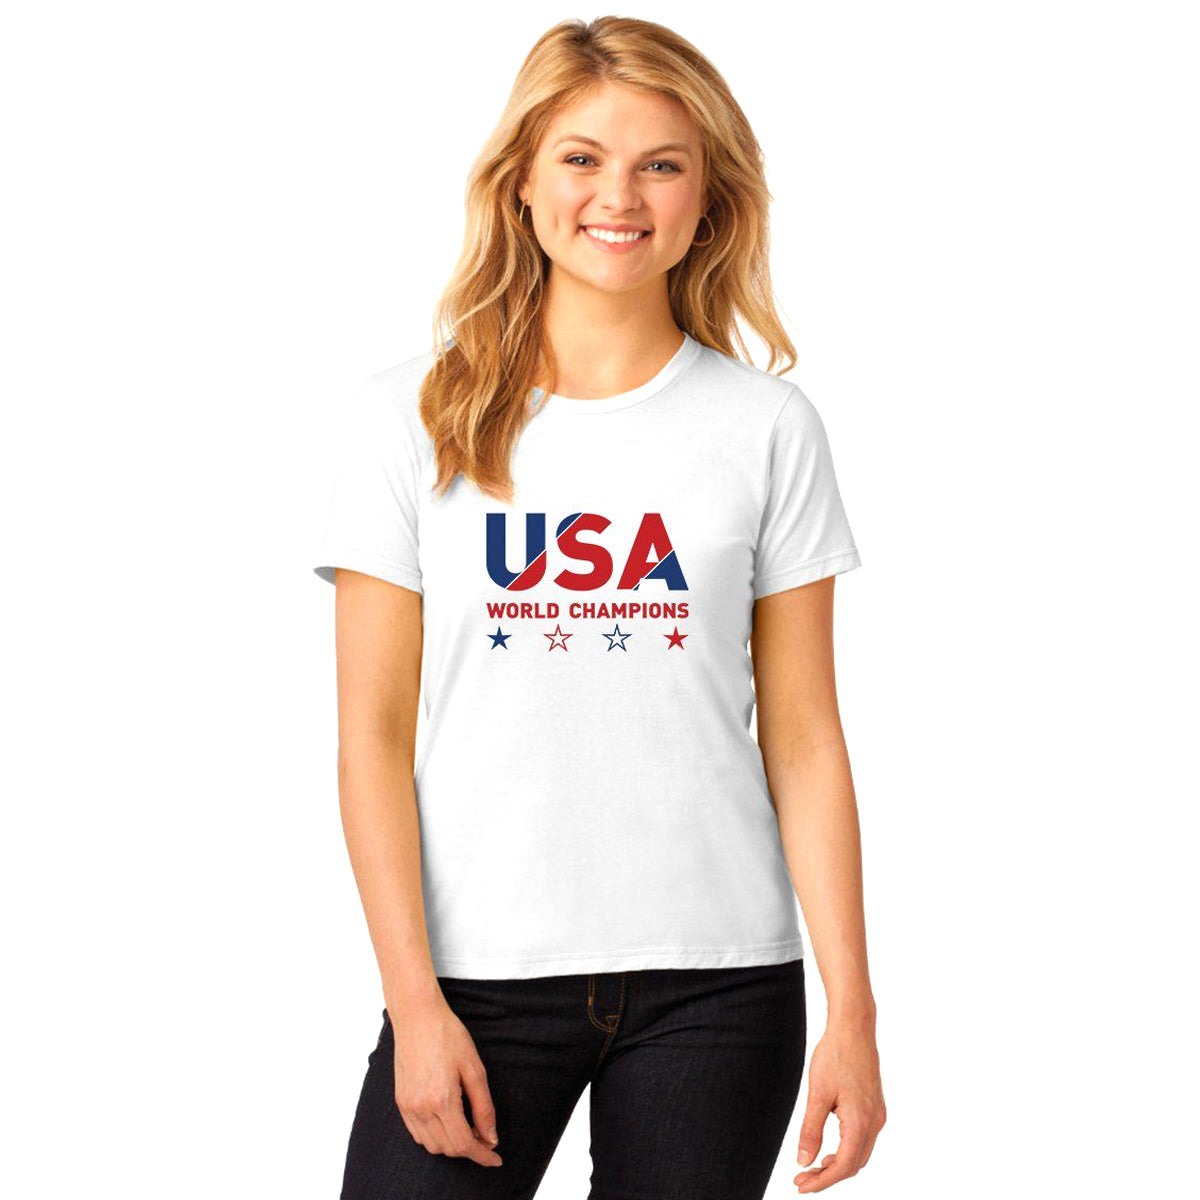 USA World Cup 2019 Champions Shirt T-shirts 411 Small White Women's